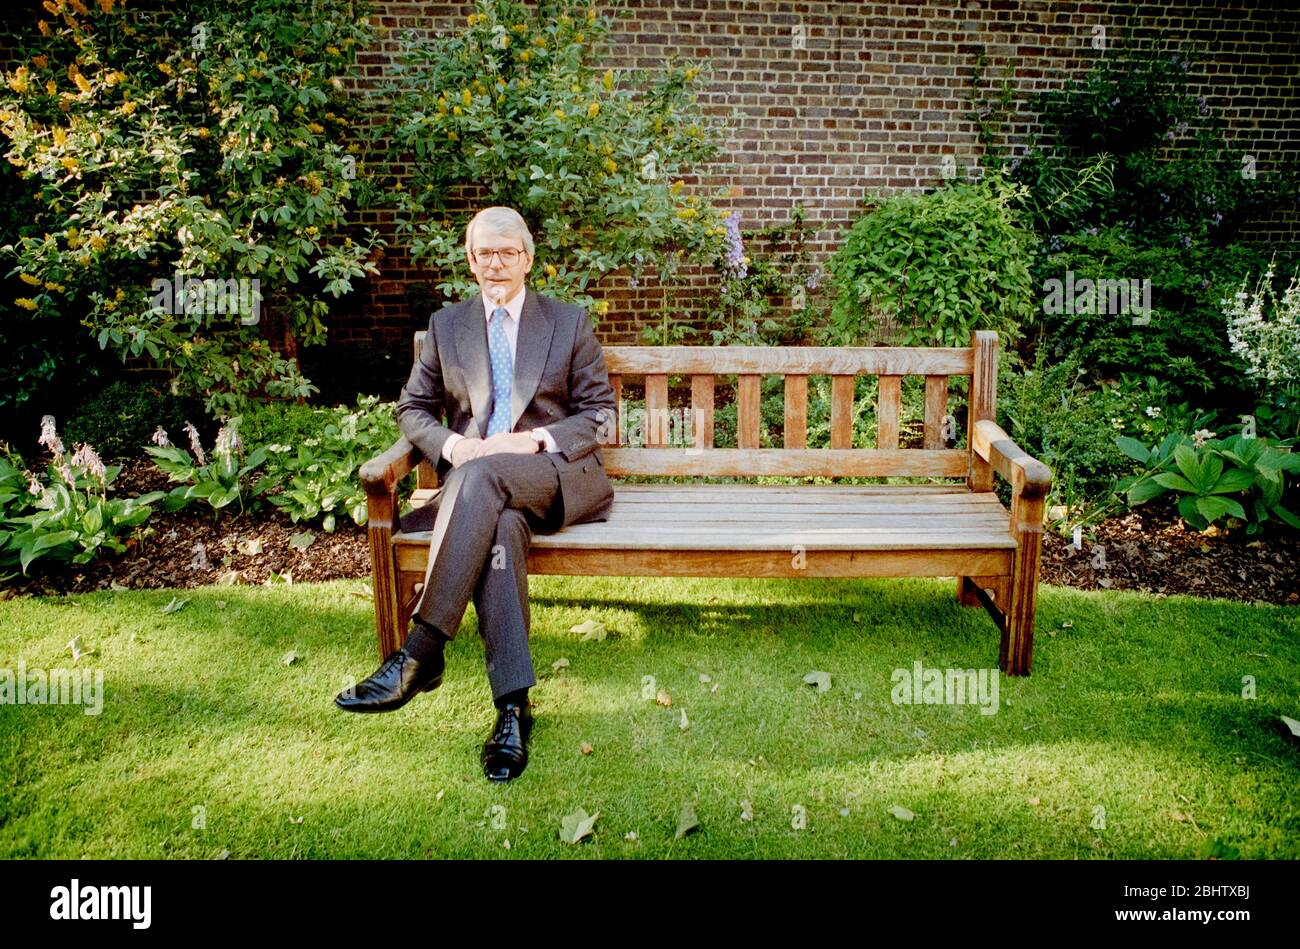 Ritratto del primo Ministro britannico John Major nel giardino di 10 Downing Street il 22 giugno 1995, il giorno in cui si dimise come leader del Partito conservatore e chiese a qualsiasi membro di opporsi a lui. Foto Stock